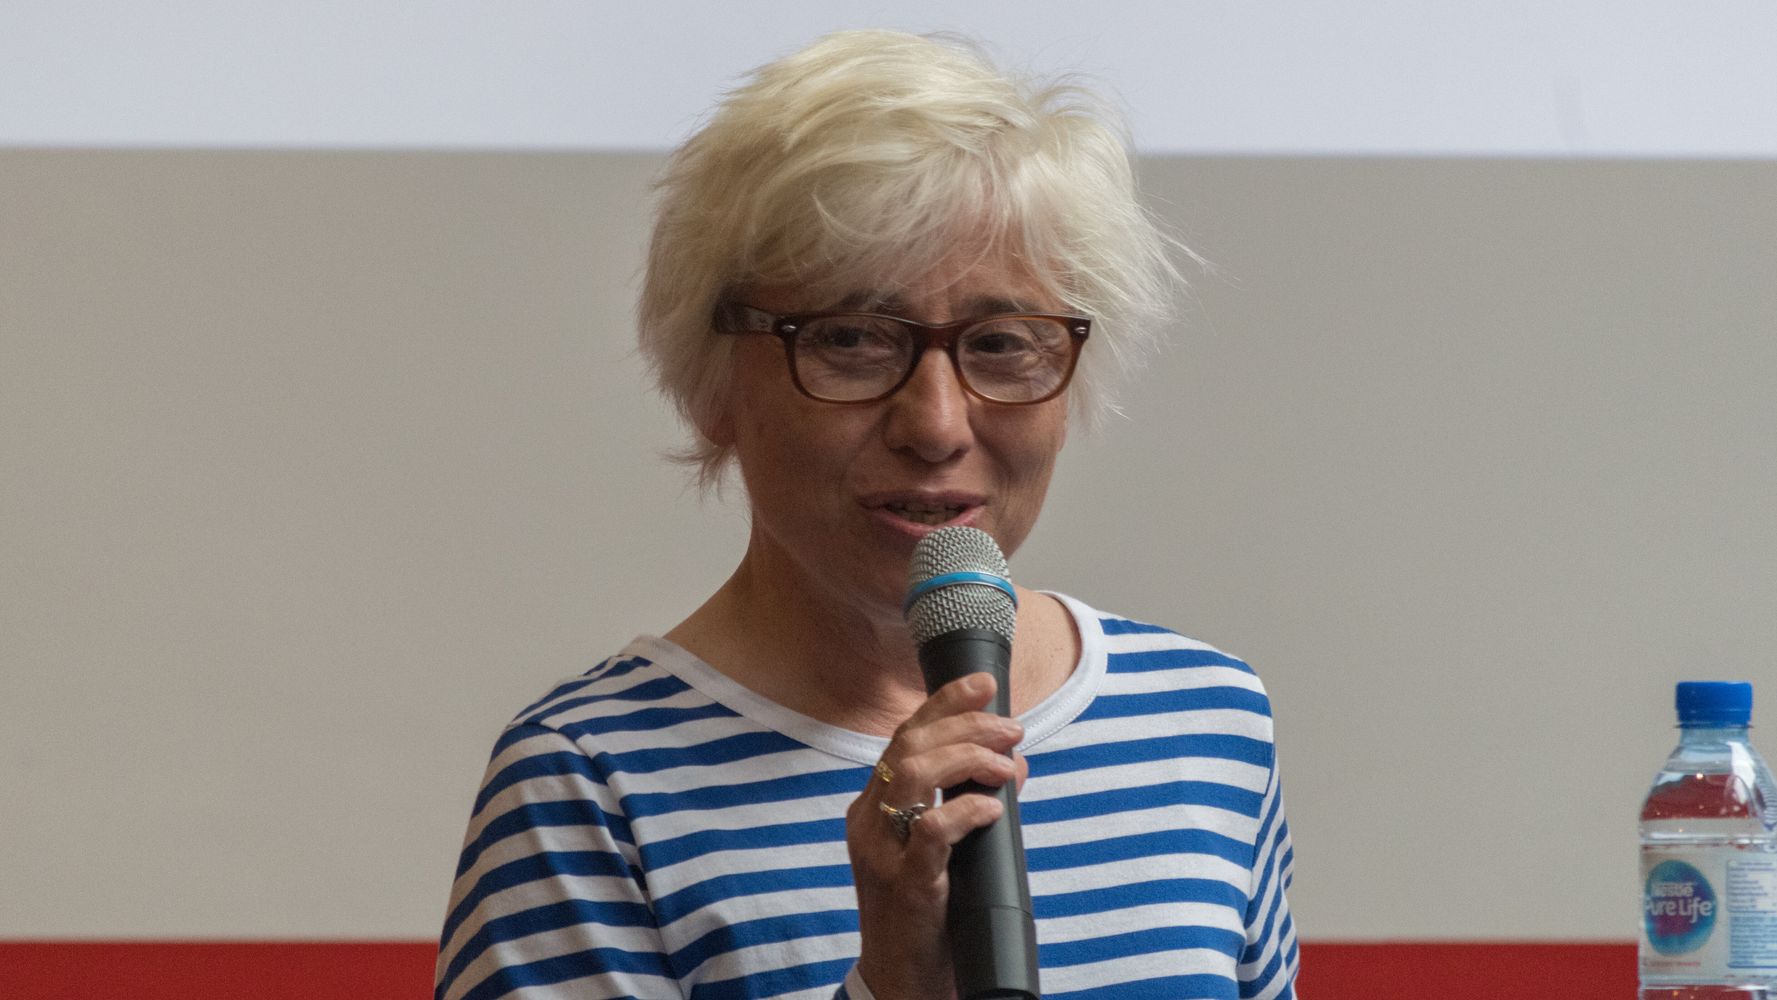 L'élue LREM Anne-France Brunet, accusée de harcèlement, porte plainte pour dénonciation calomnieuse